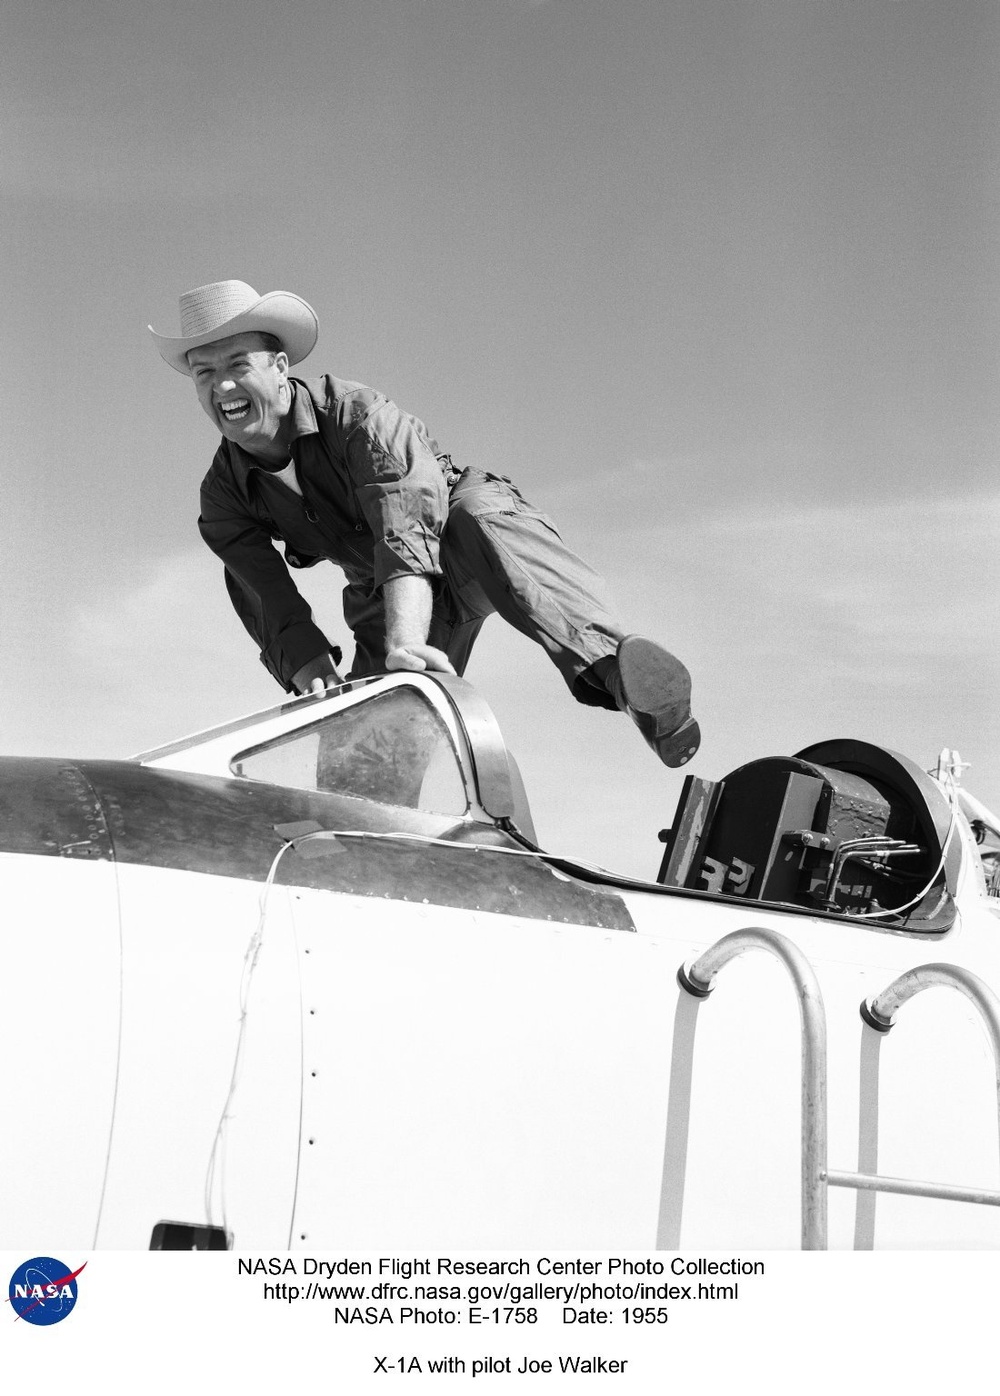 X-1A with pilot Joe Walker